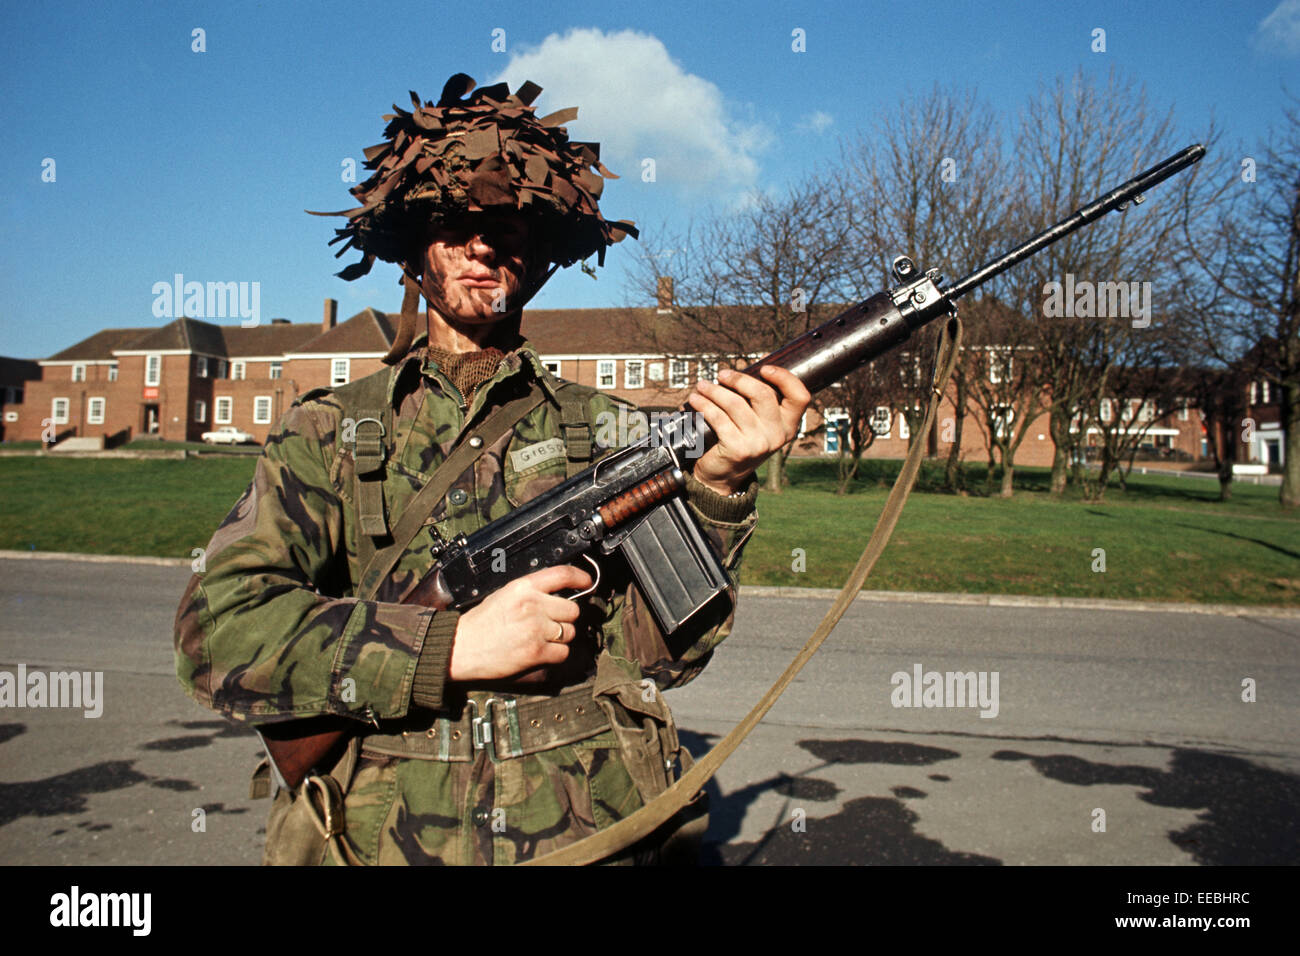 WAFFEN DER ULSTER - FEBRUAR 1972. Britische Armee Soldat mit L1A1, 7.62 Gewehr während The Troubles, Nordirland verwendet. Stockfoto